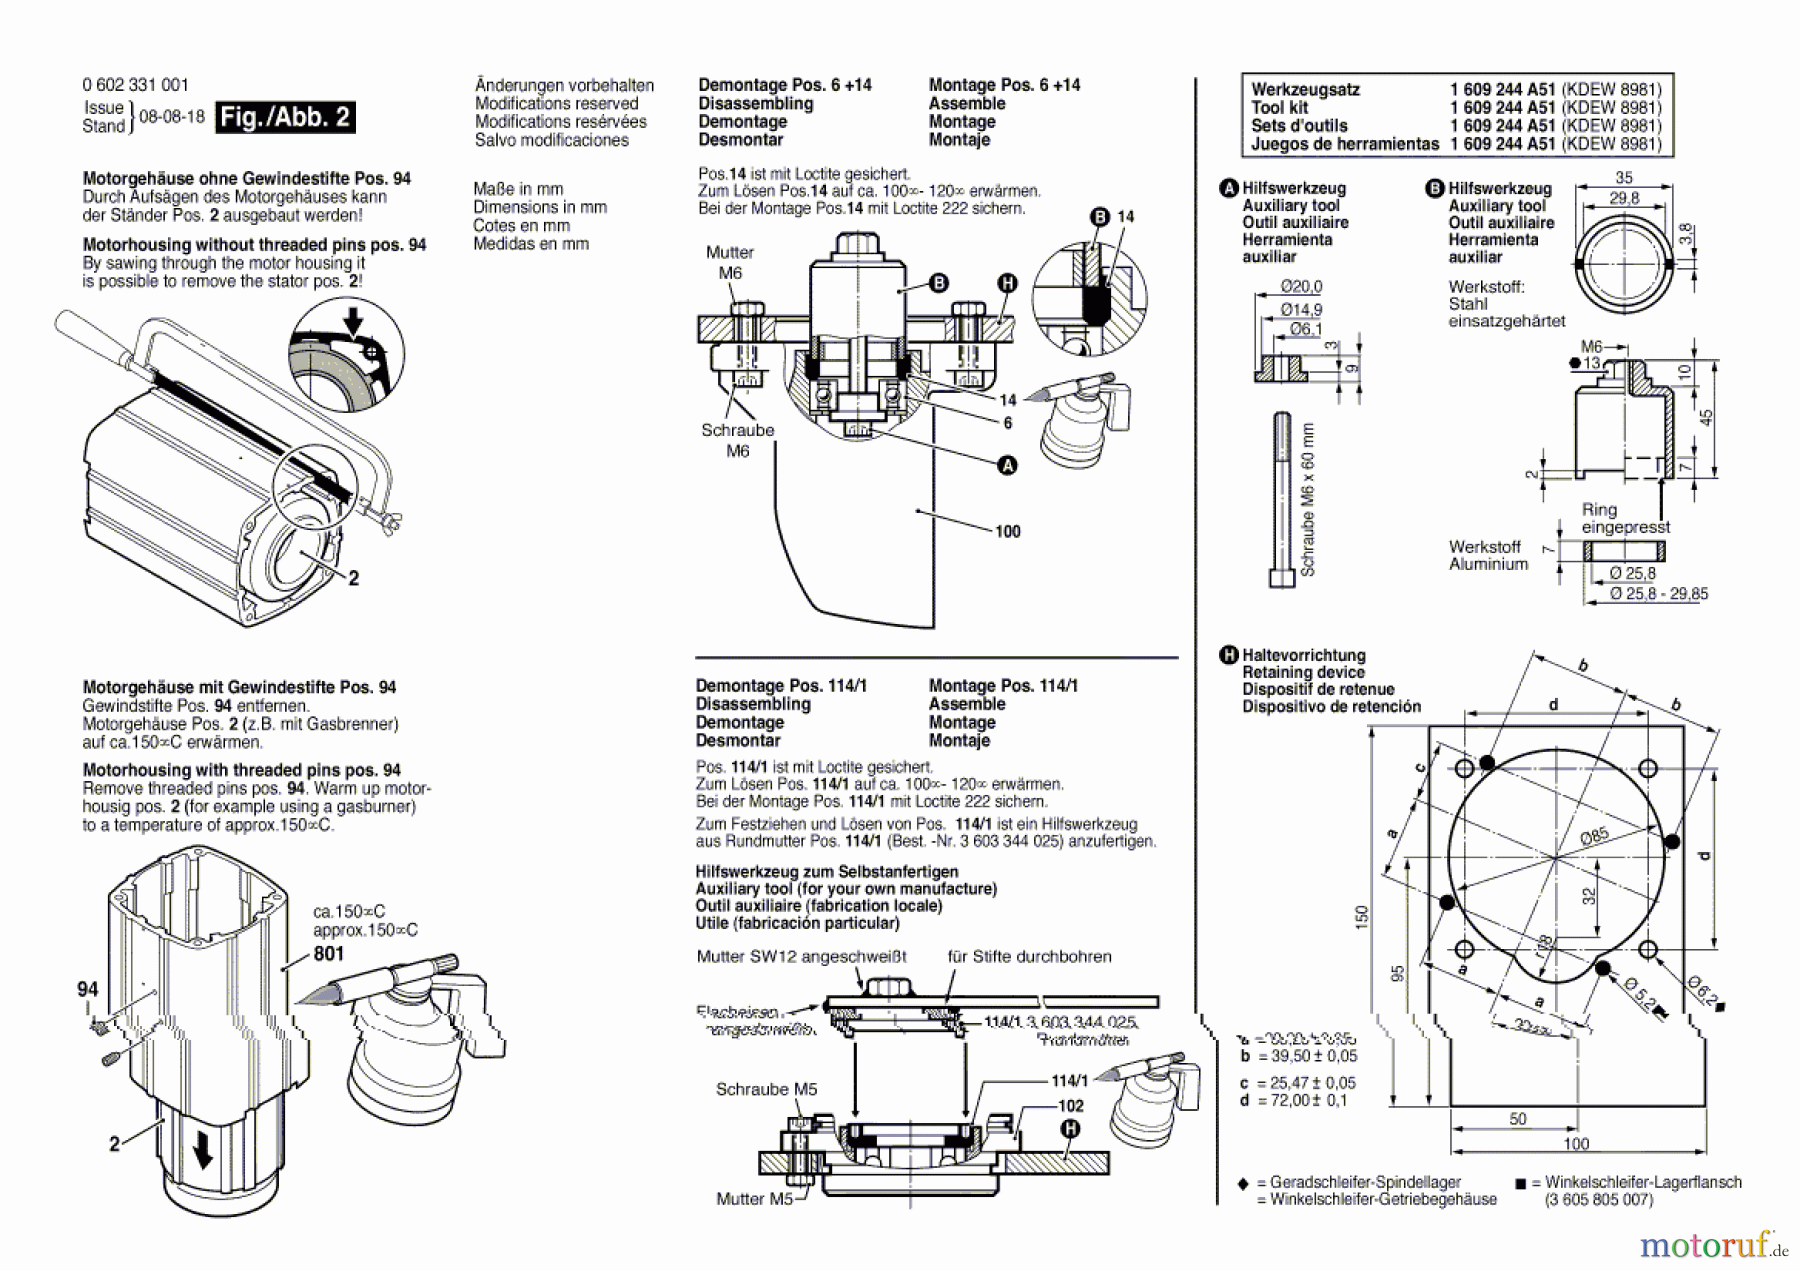  Bosch Werkzeug Flachkopfwinkelschleifer ---- Seite 2